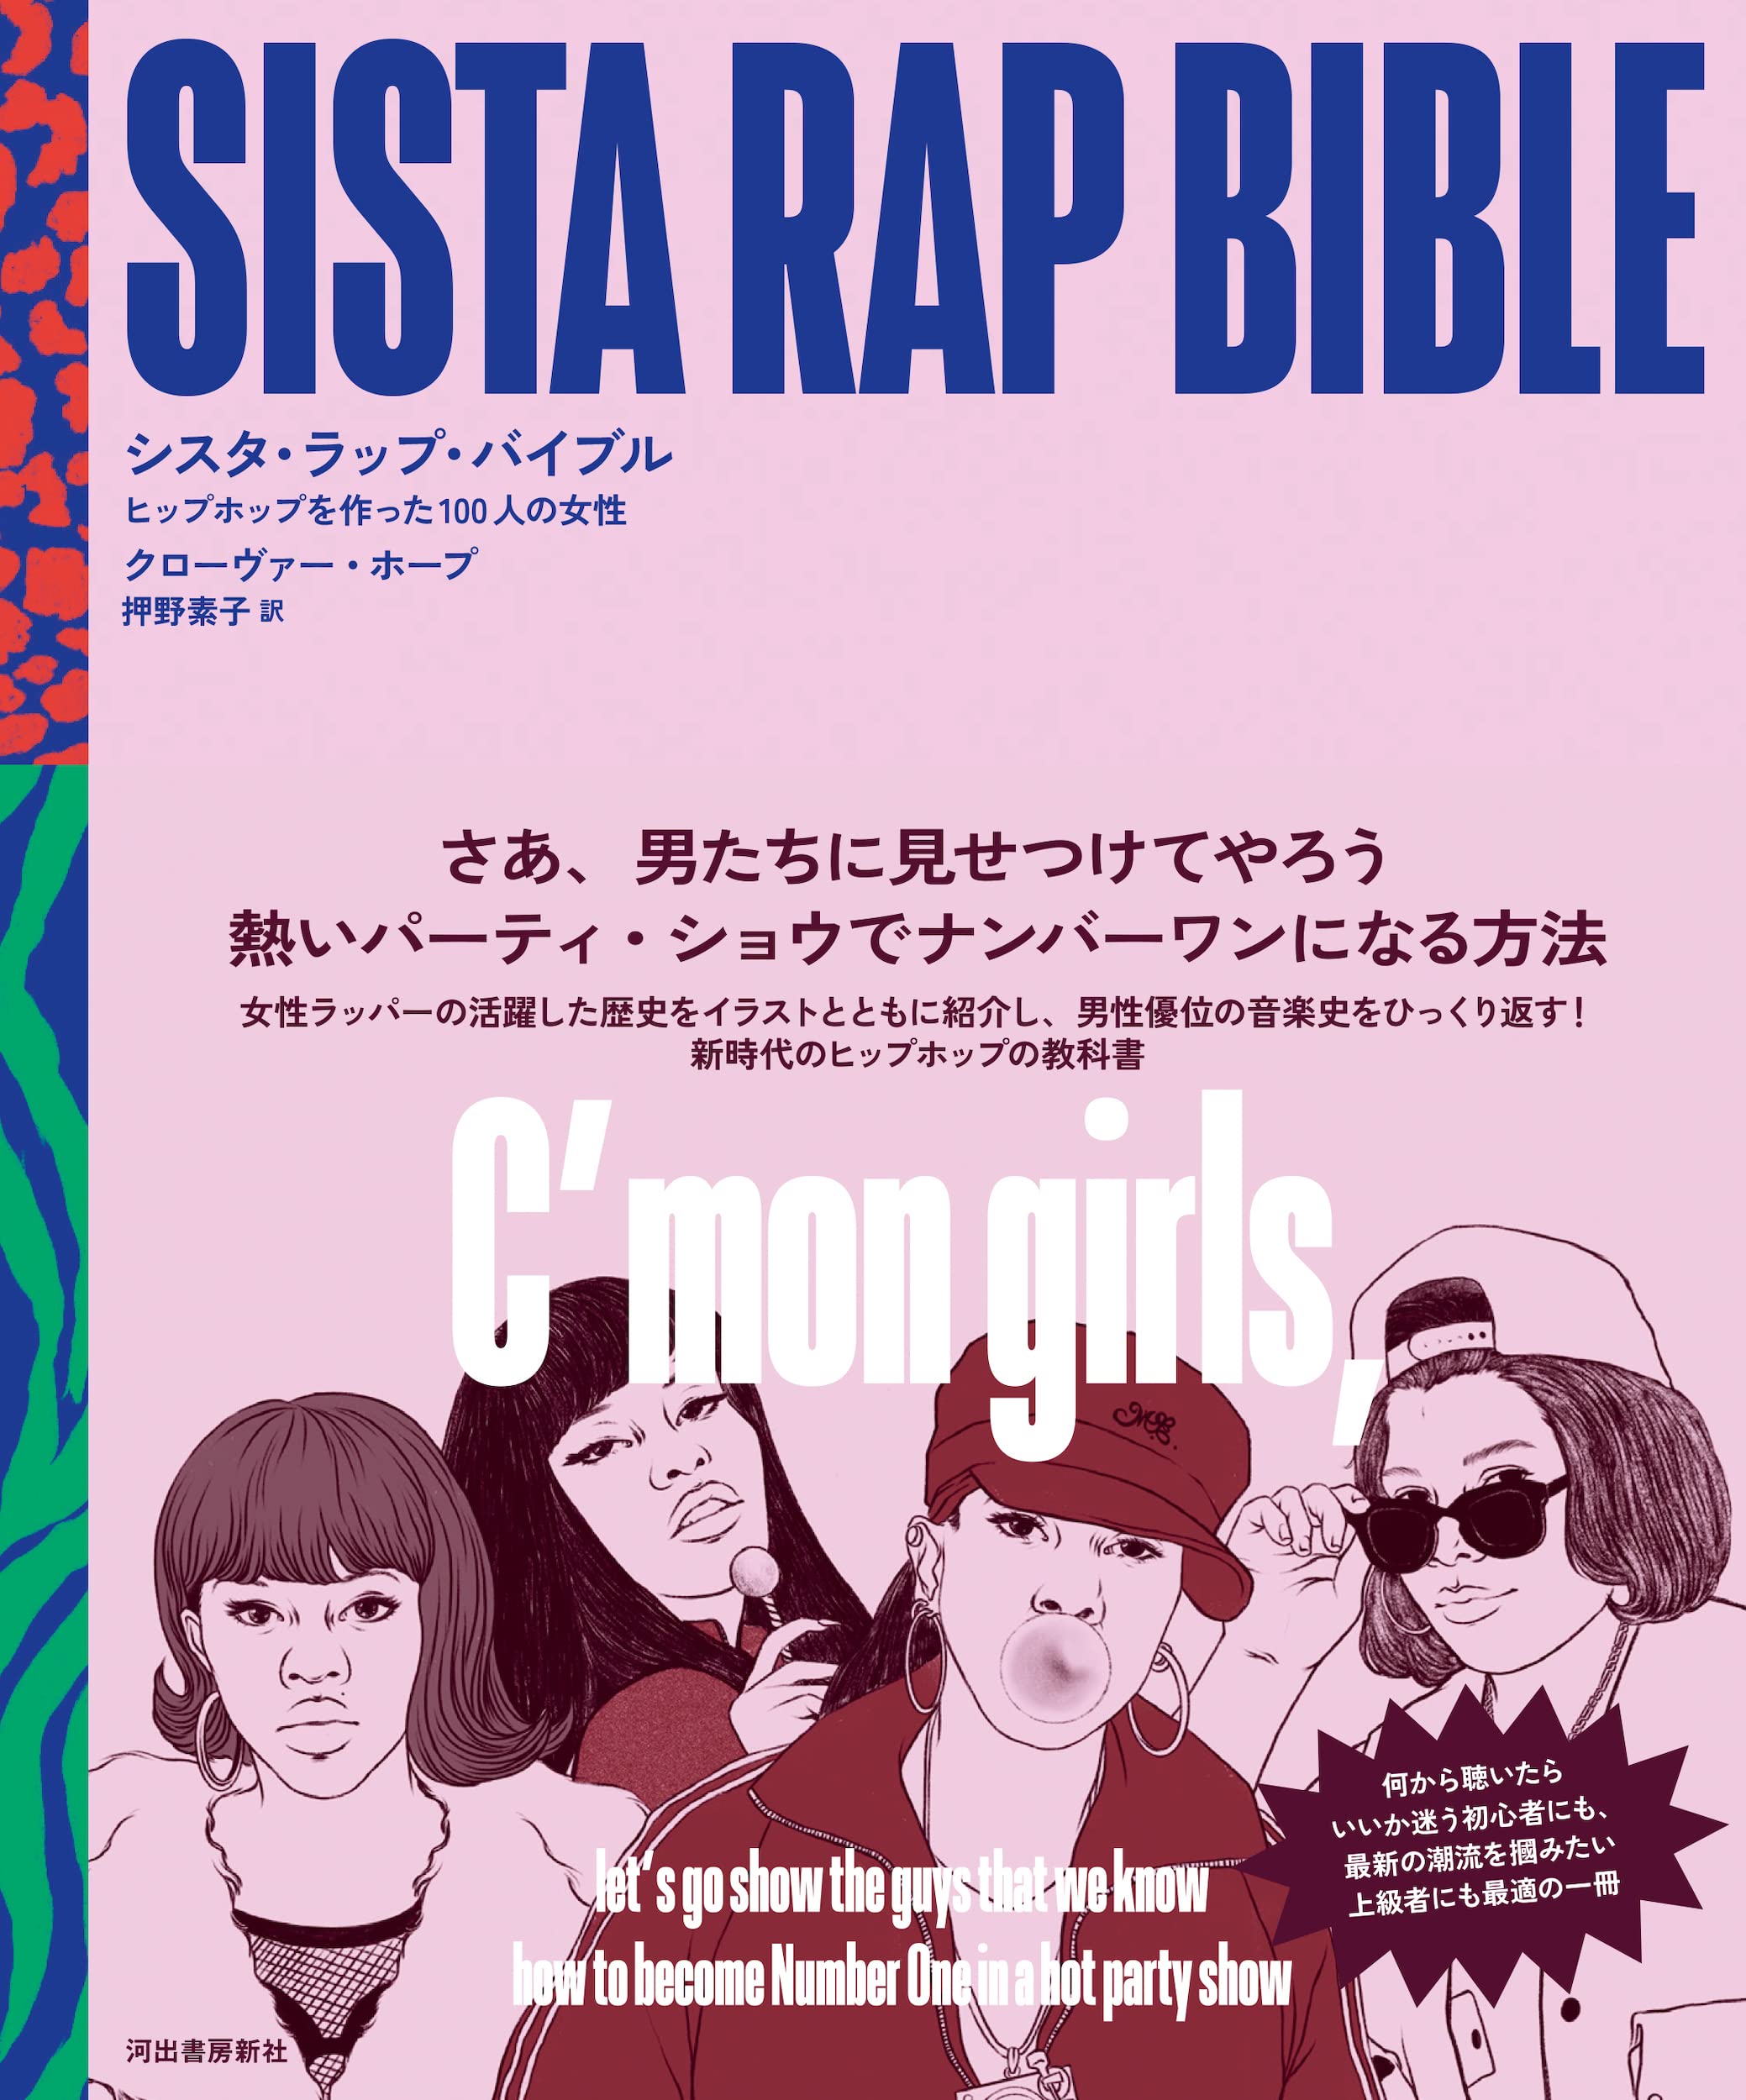 Sista Rap Bible